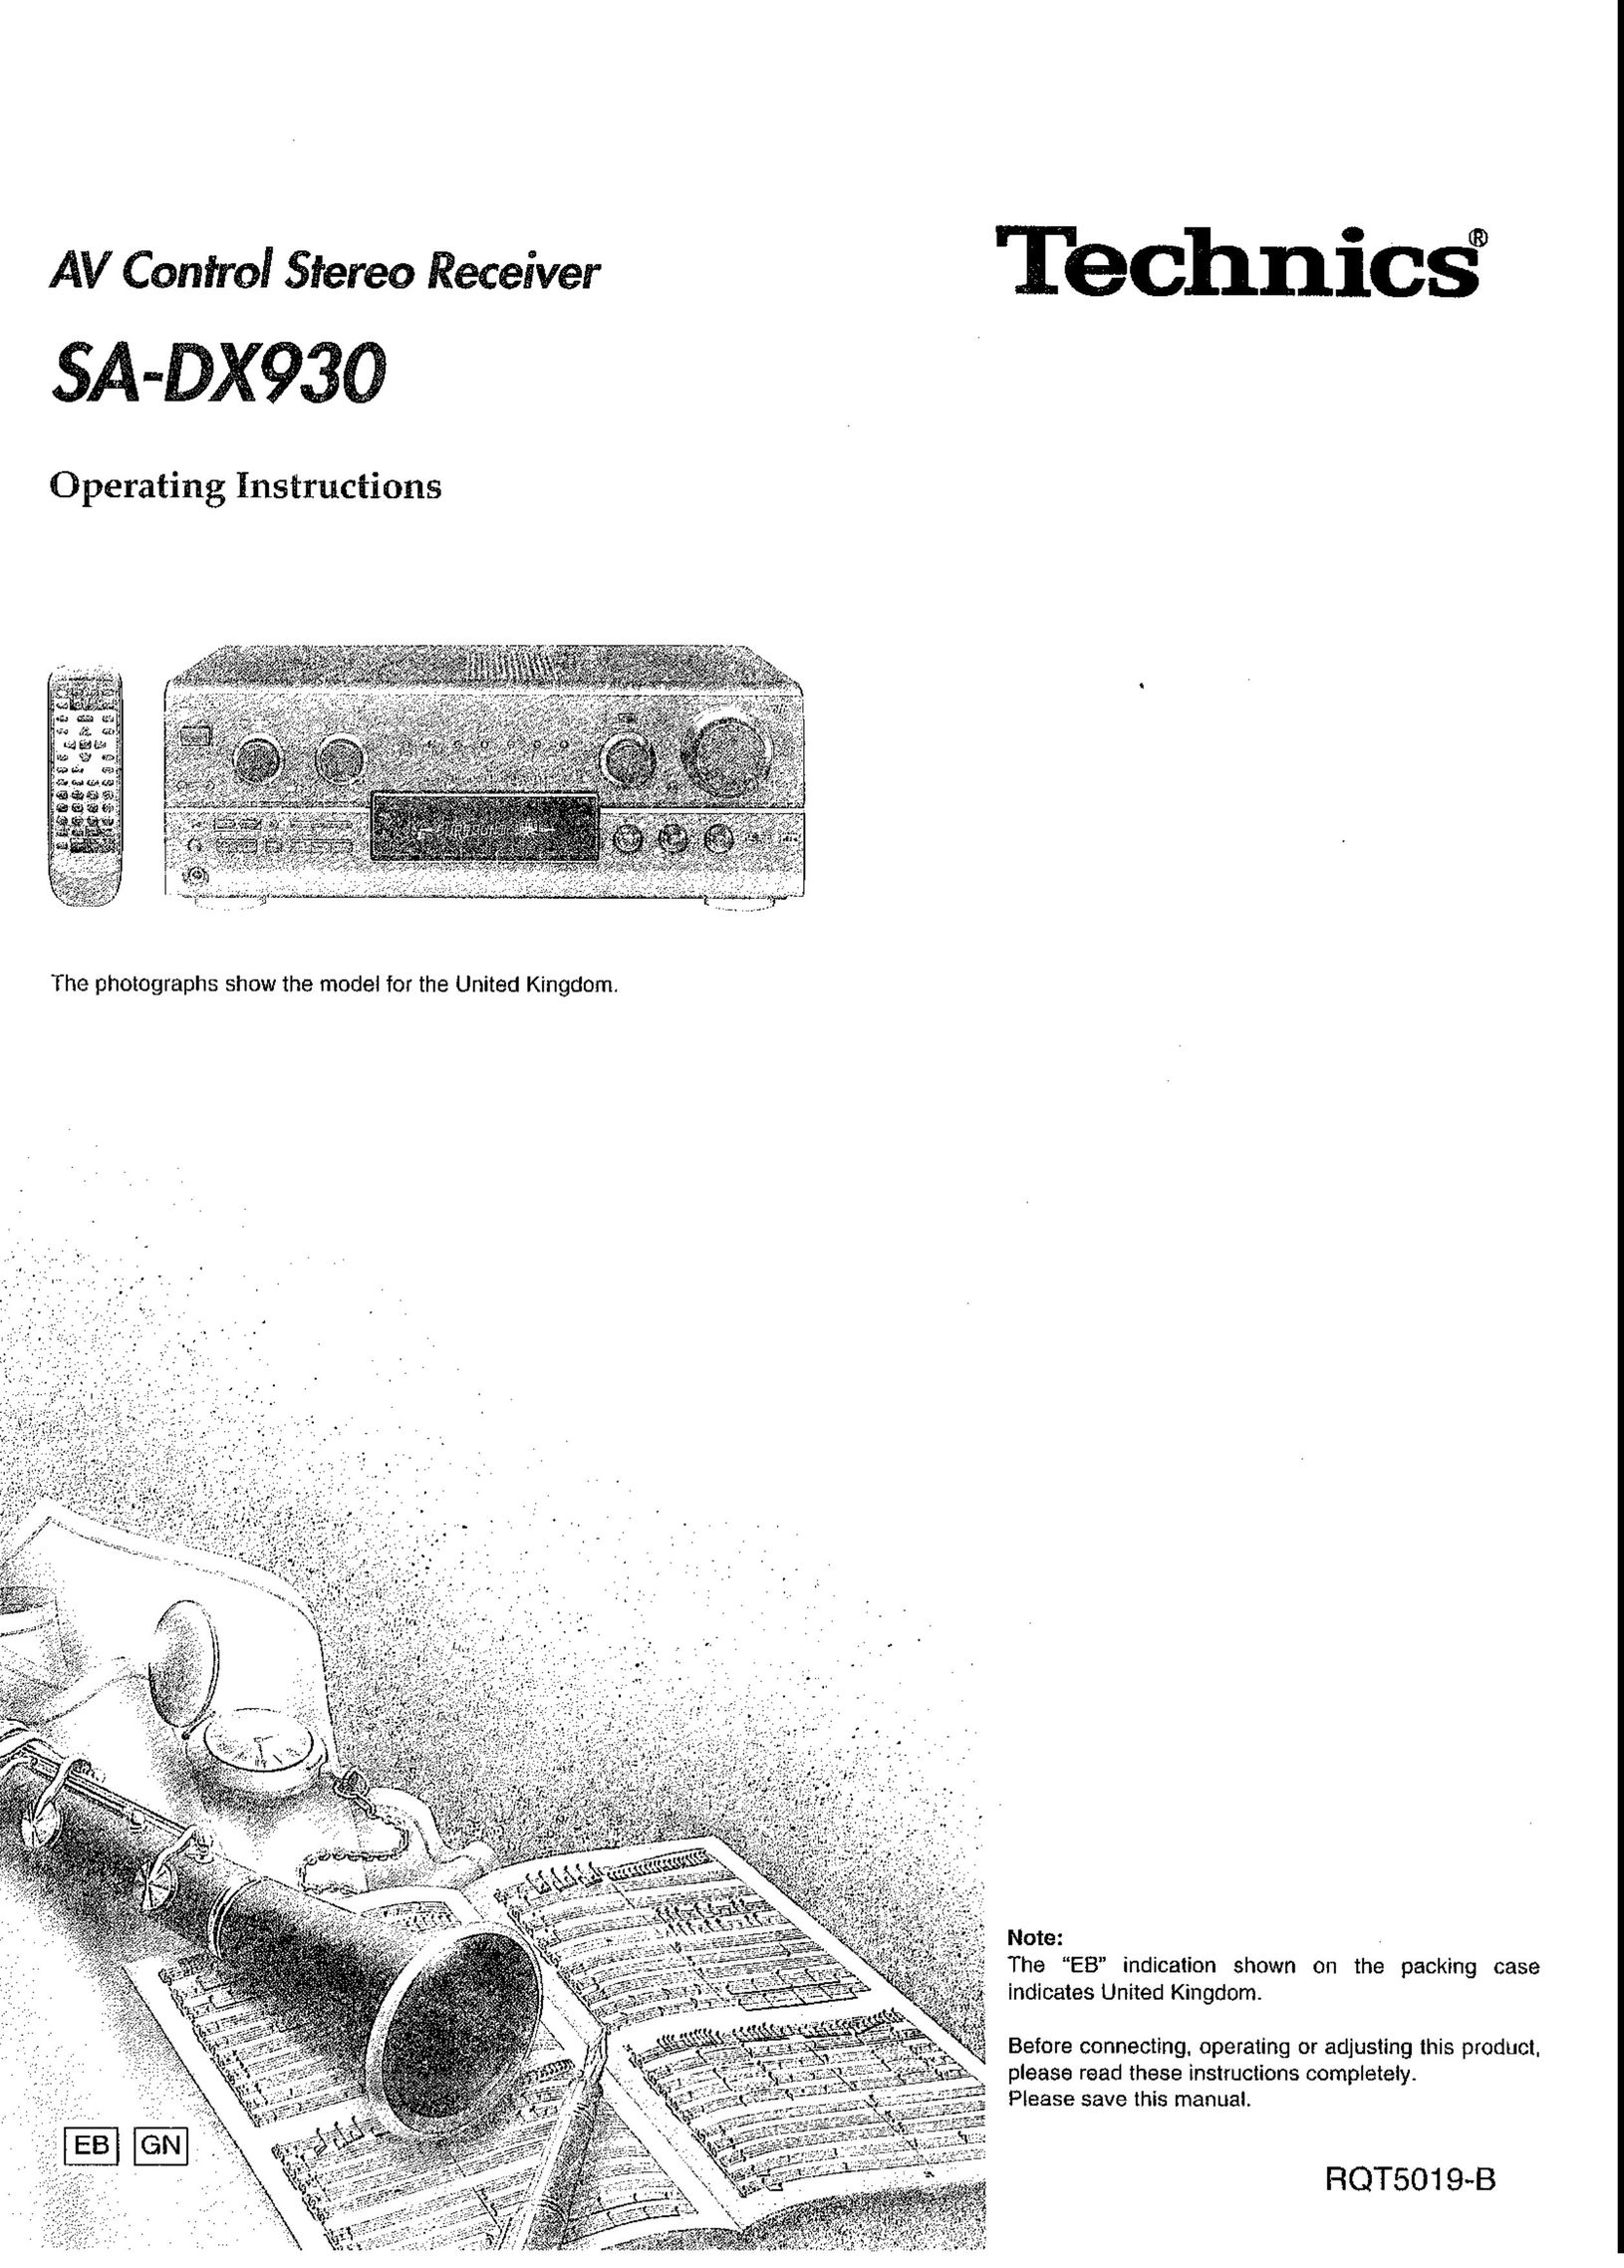 Panasonic SA-DX930 Stereo Receiver User Manual